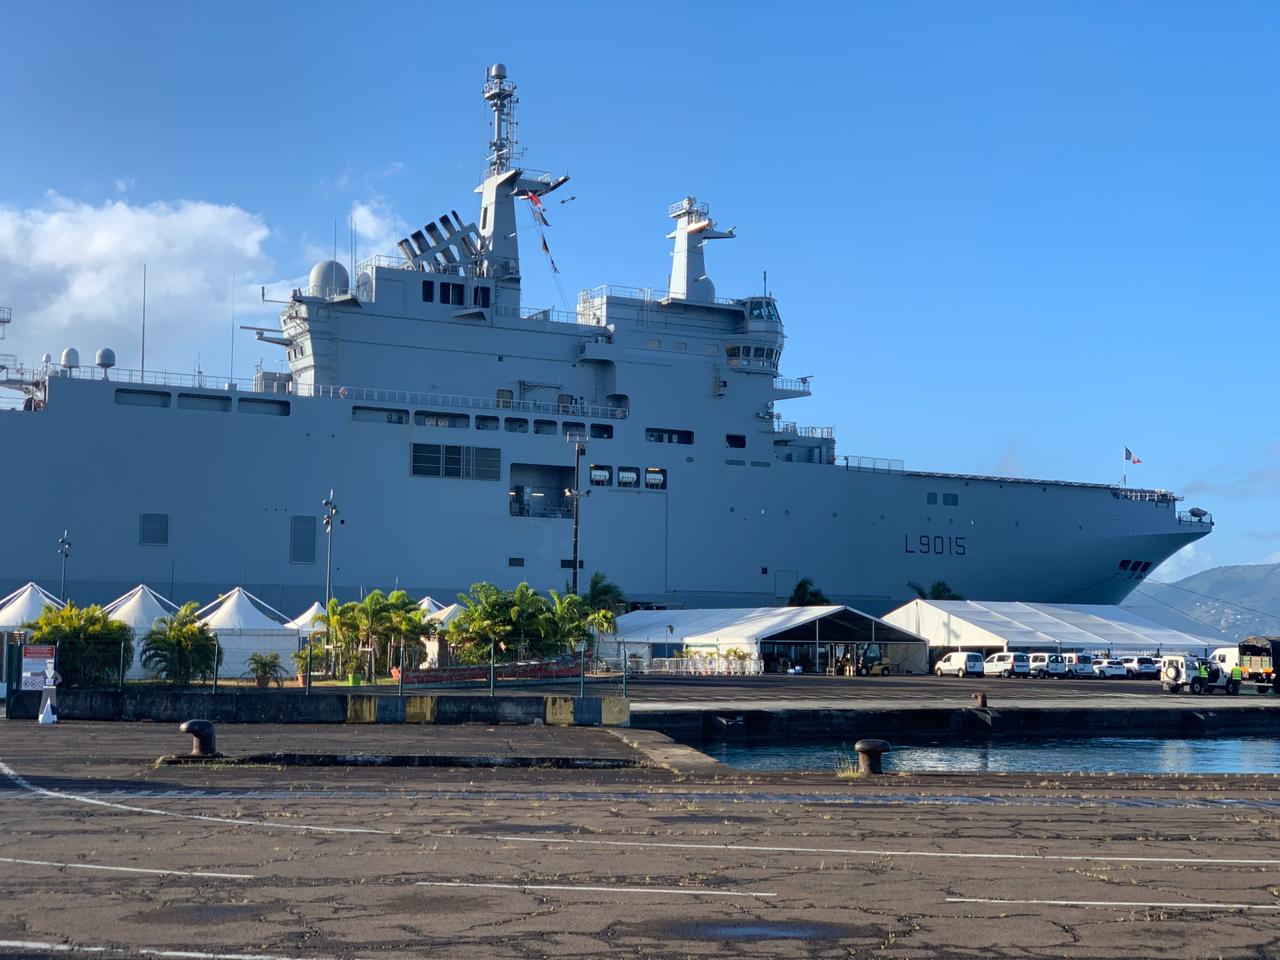     [En images] Le porte-hélicoptères Dixmude au port de Fort-de-France

